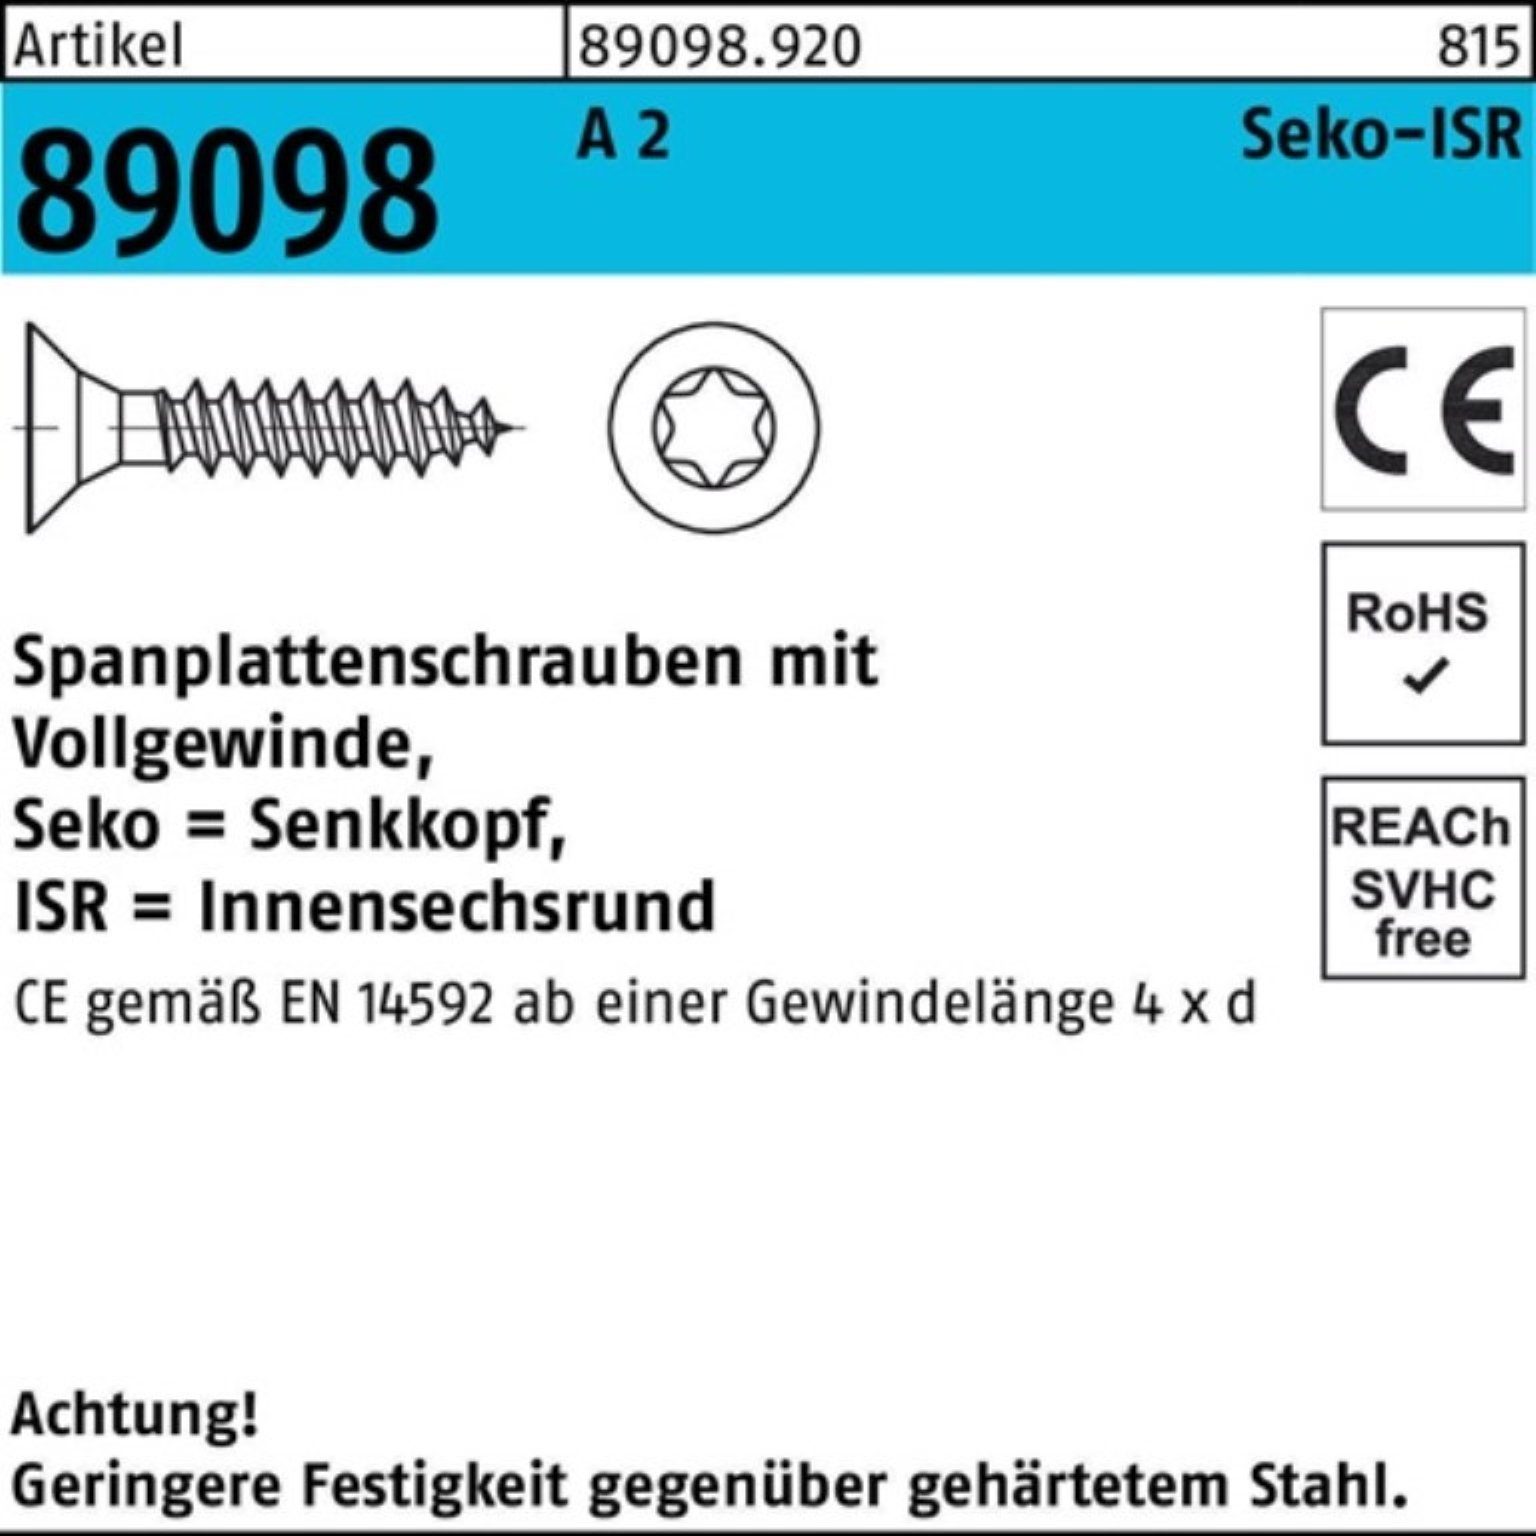 Reyher Spanplattenschraube 200er Pack 89098 50-T20 2 A R 200 SEKO S VG 4x ISR Spanplattenschraube